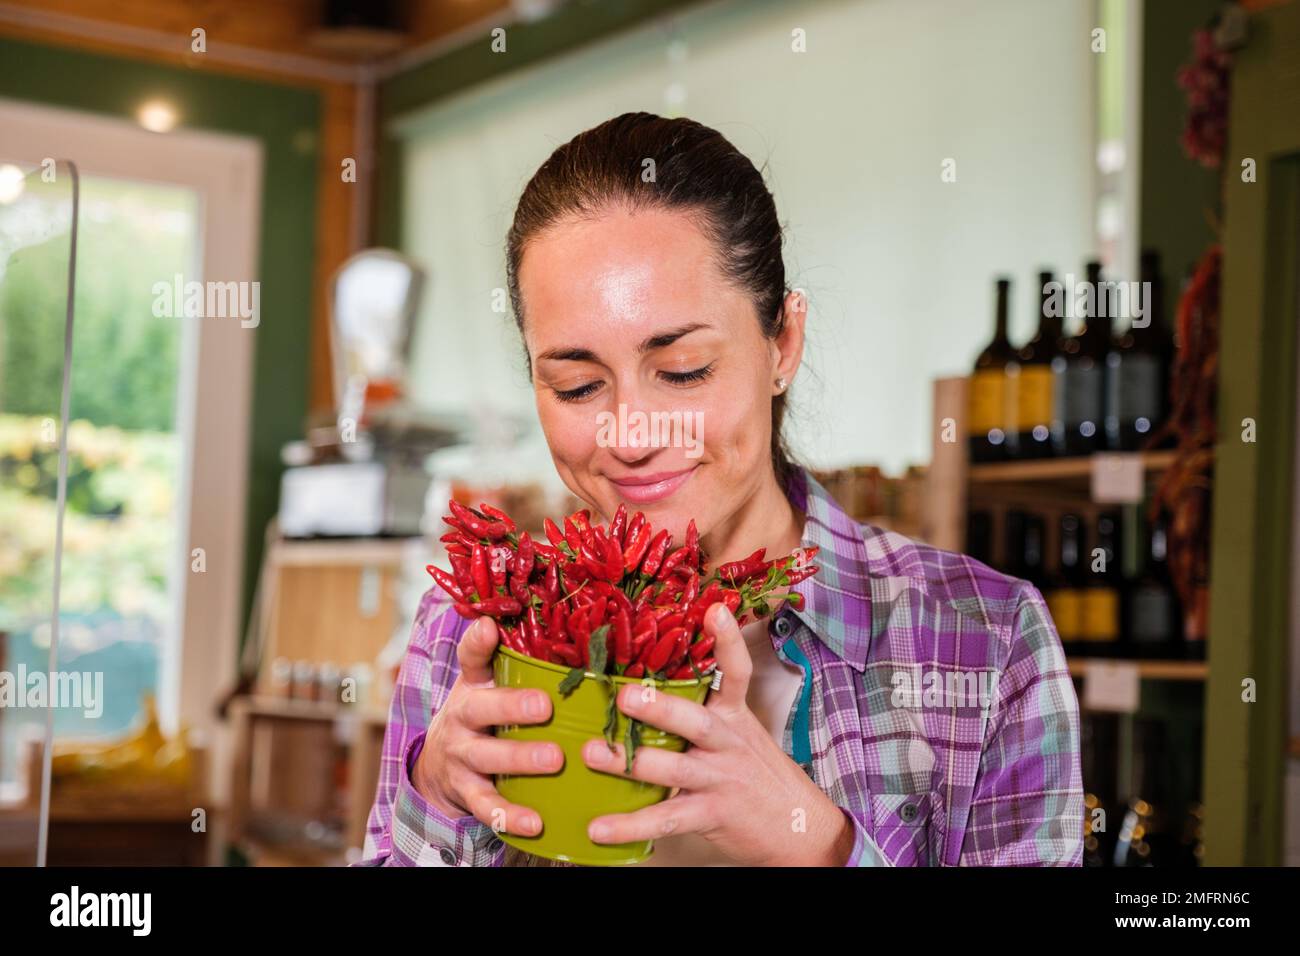 Ein wunderschönes Mädchen, das in einem Supermarkt Chili riecht - eine vegane, wunderschöne blonde Frau genießt den Geruch von Pfeffer, bevor sie im Laden buyngt Stockfoto